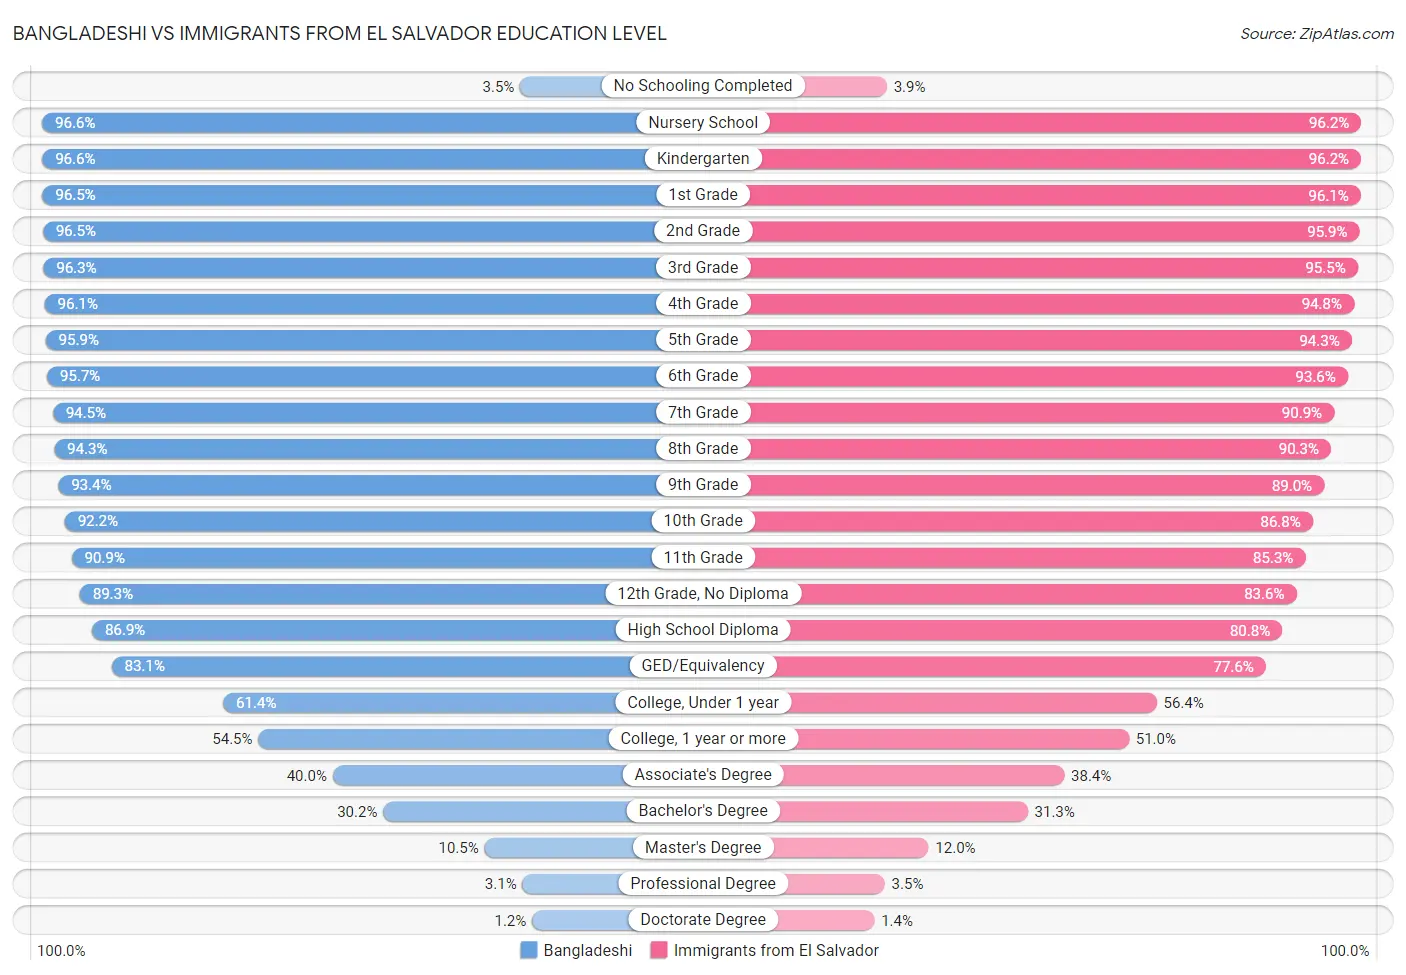 Bangladeshi vs Immigrants from El Salvador Education Level